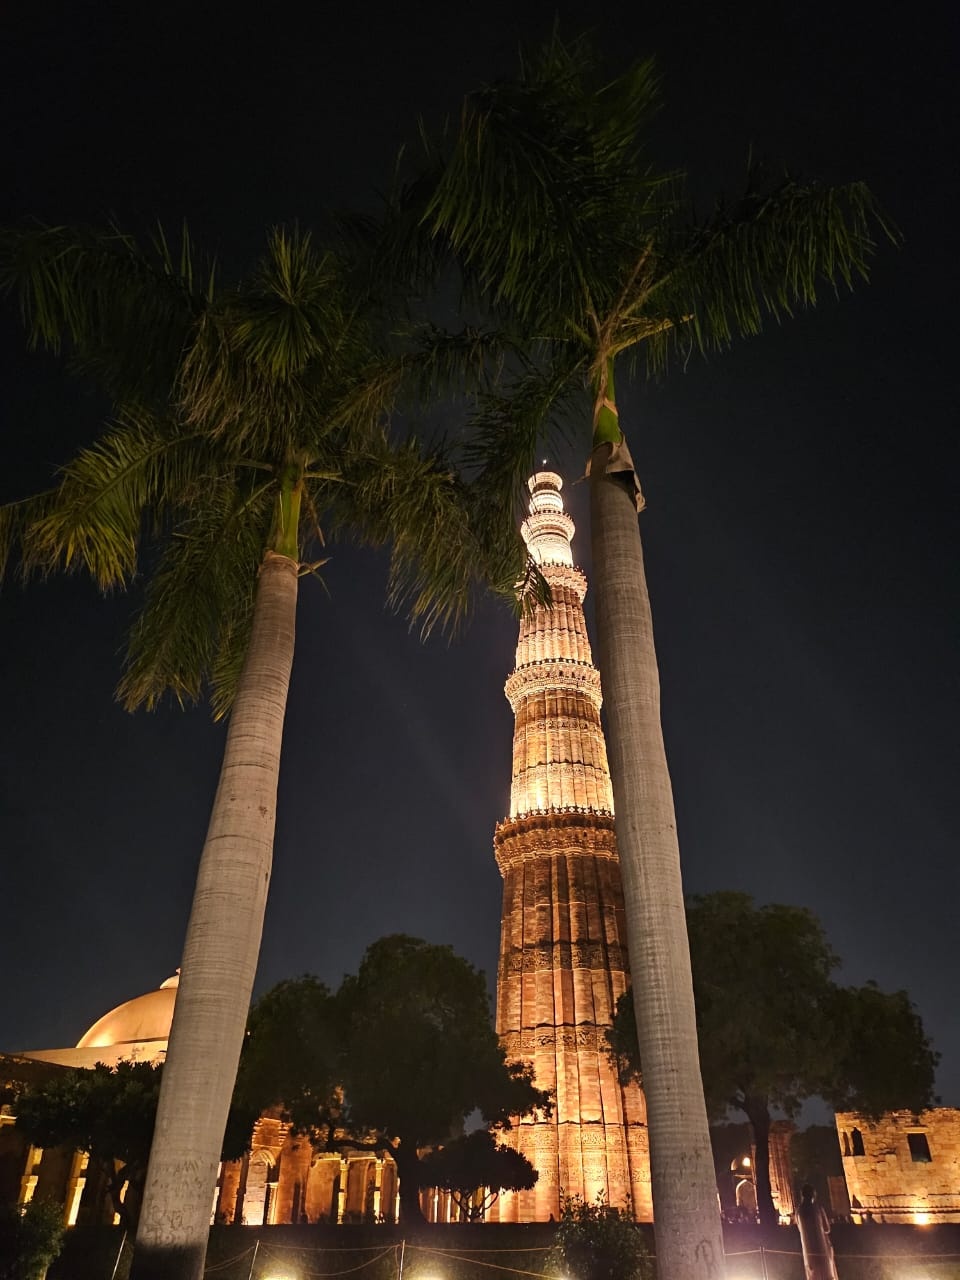 Delhi Diaries- Day 1: A visit to the Qutub Minar